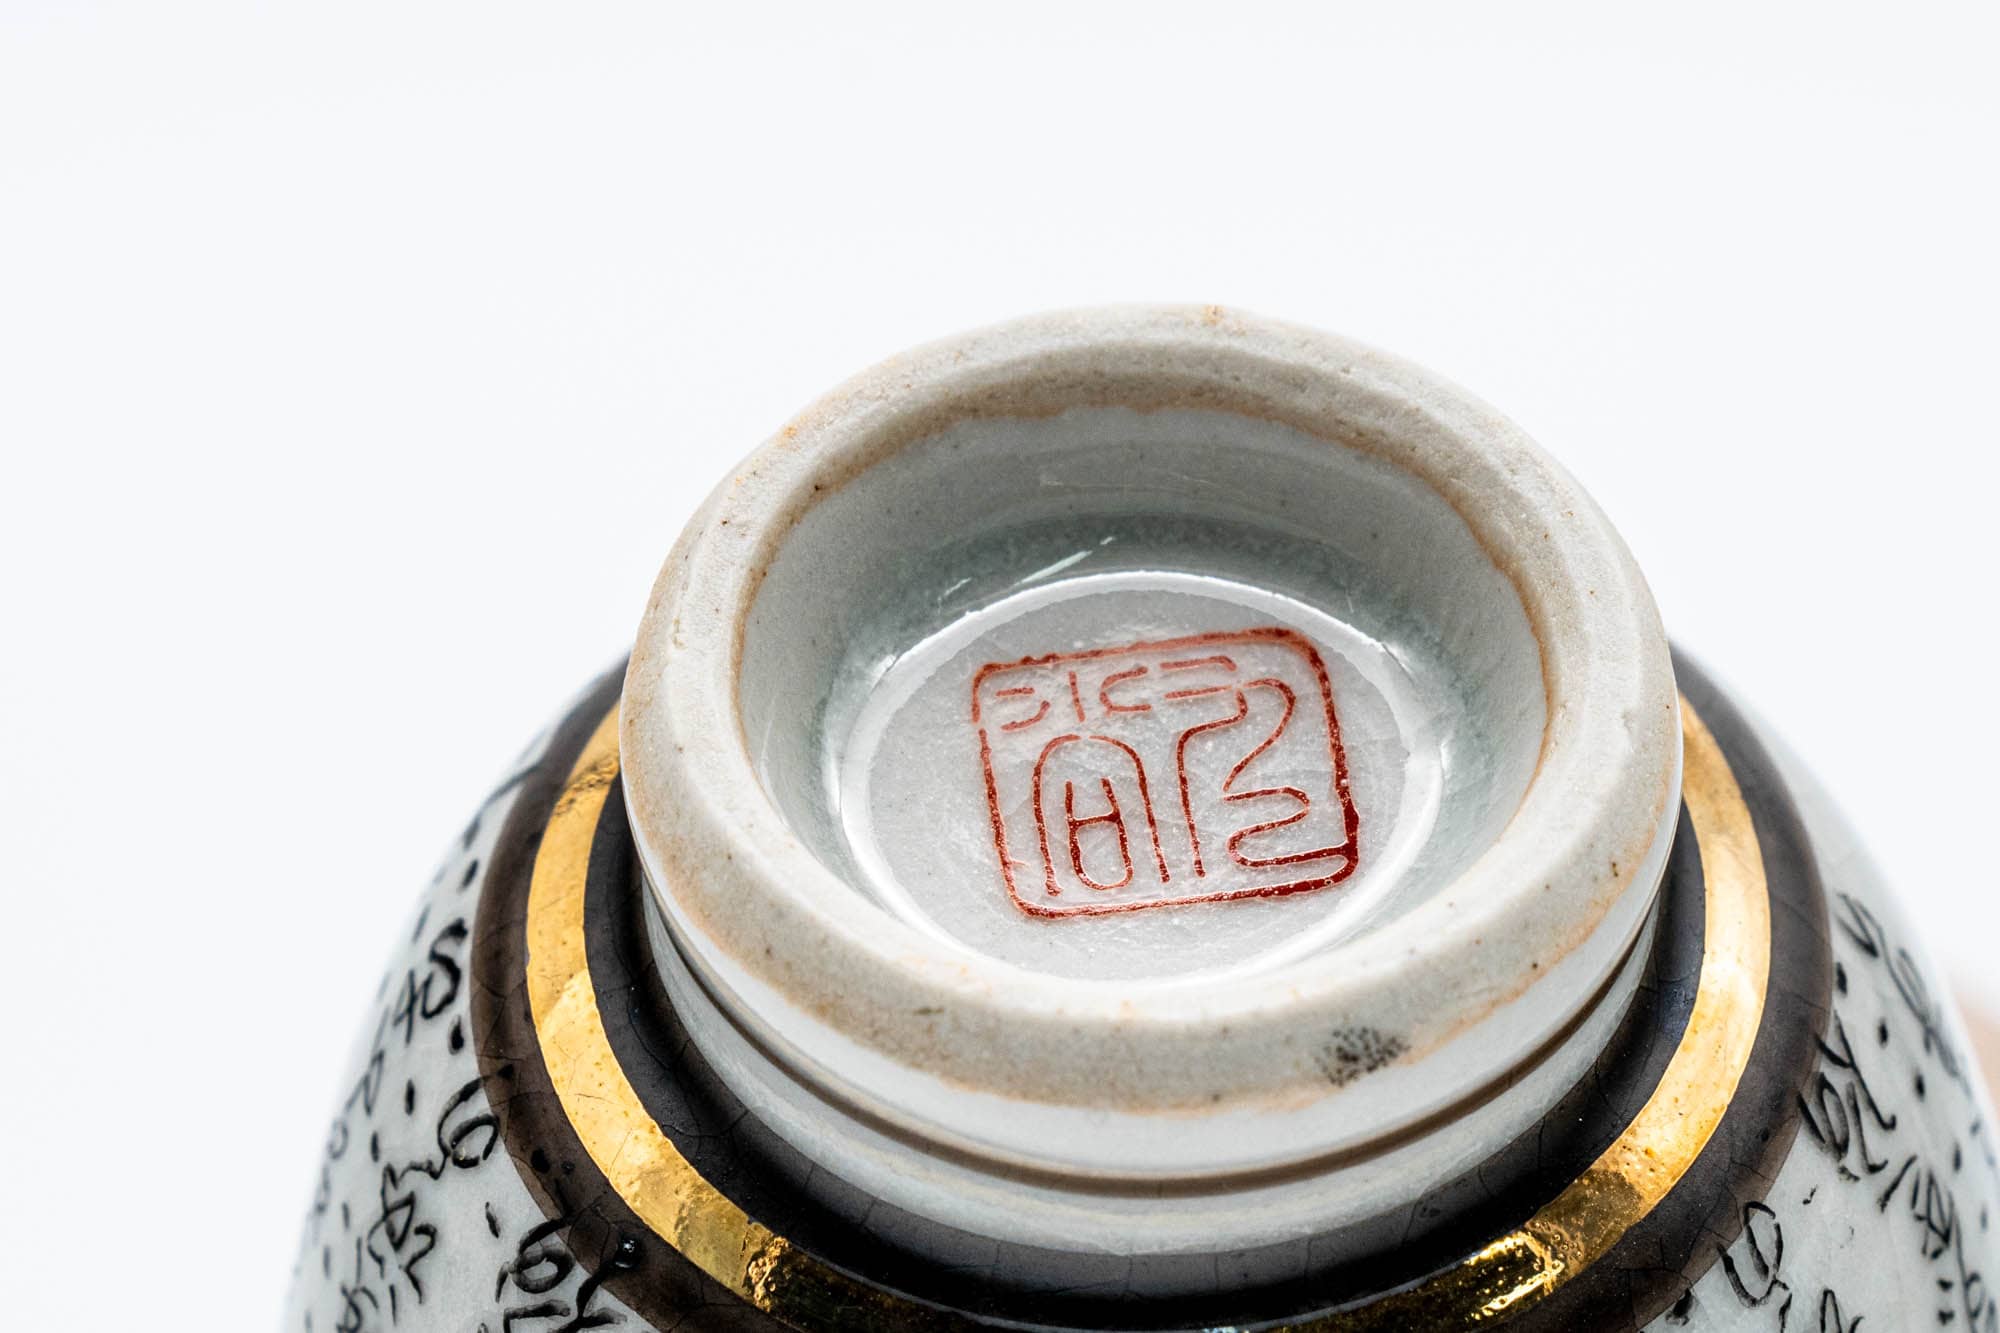 Japanese Teacups - Pair of Calligraphy Kutani-yaki Guinomi - 30ml